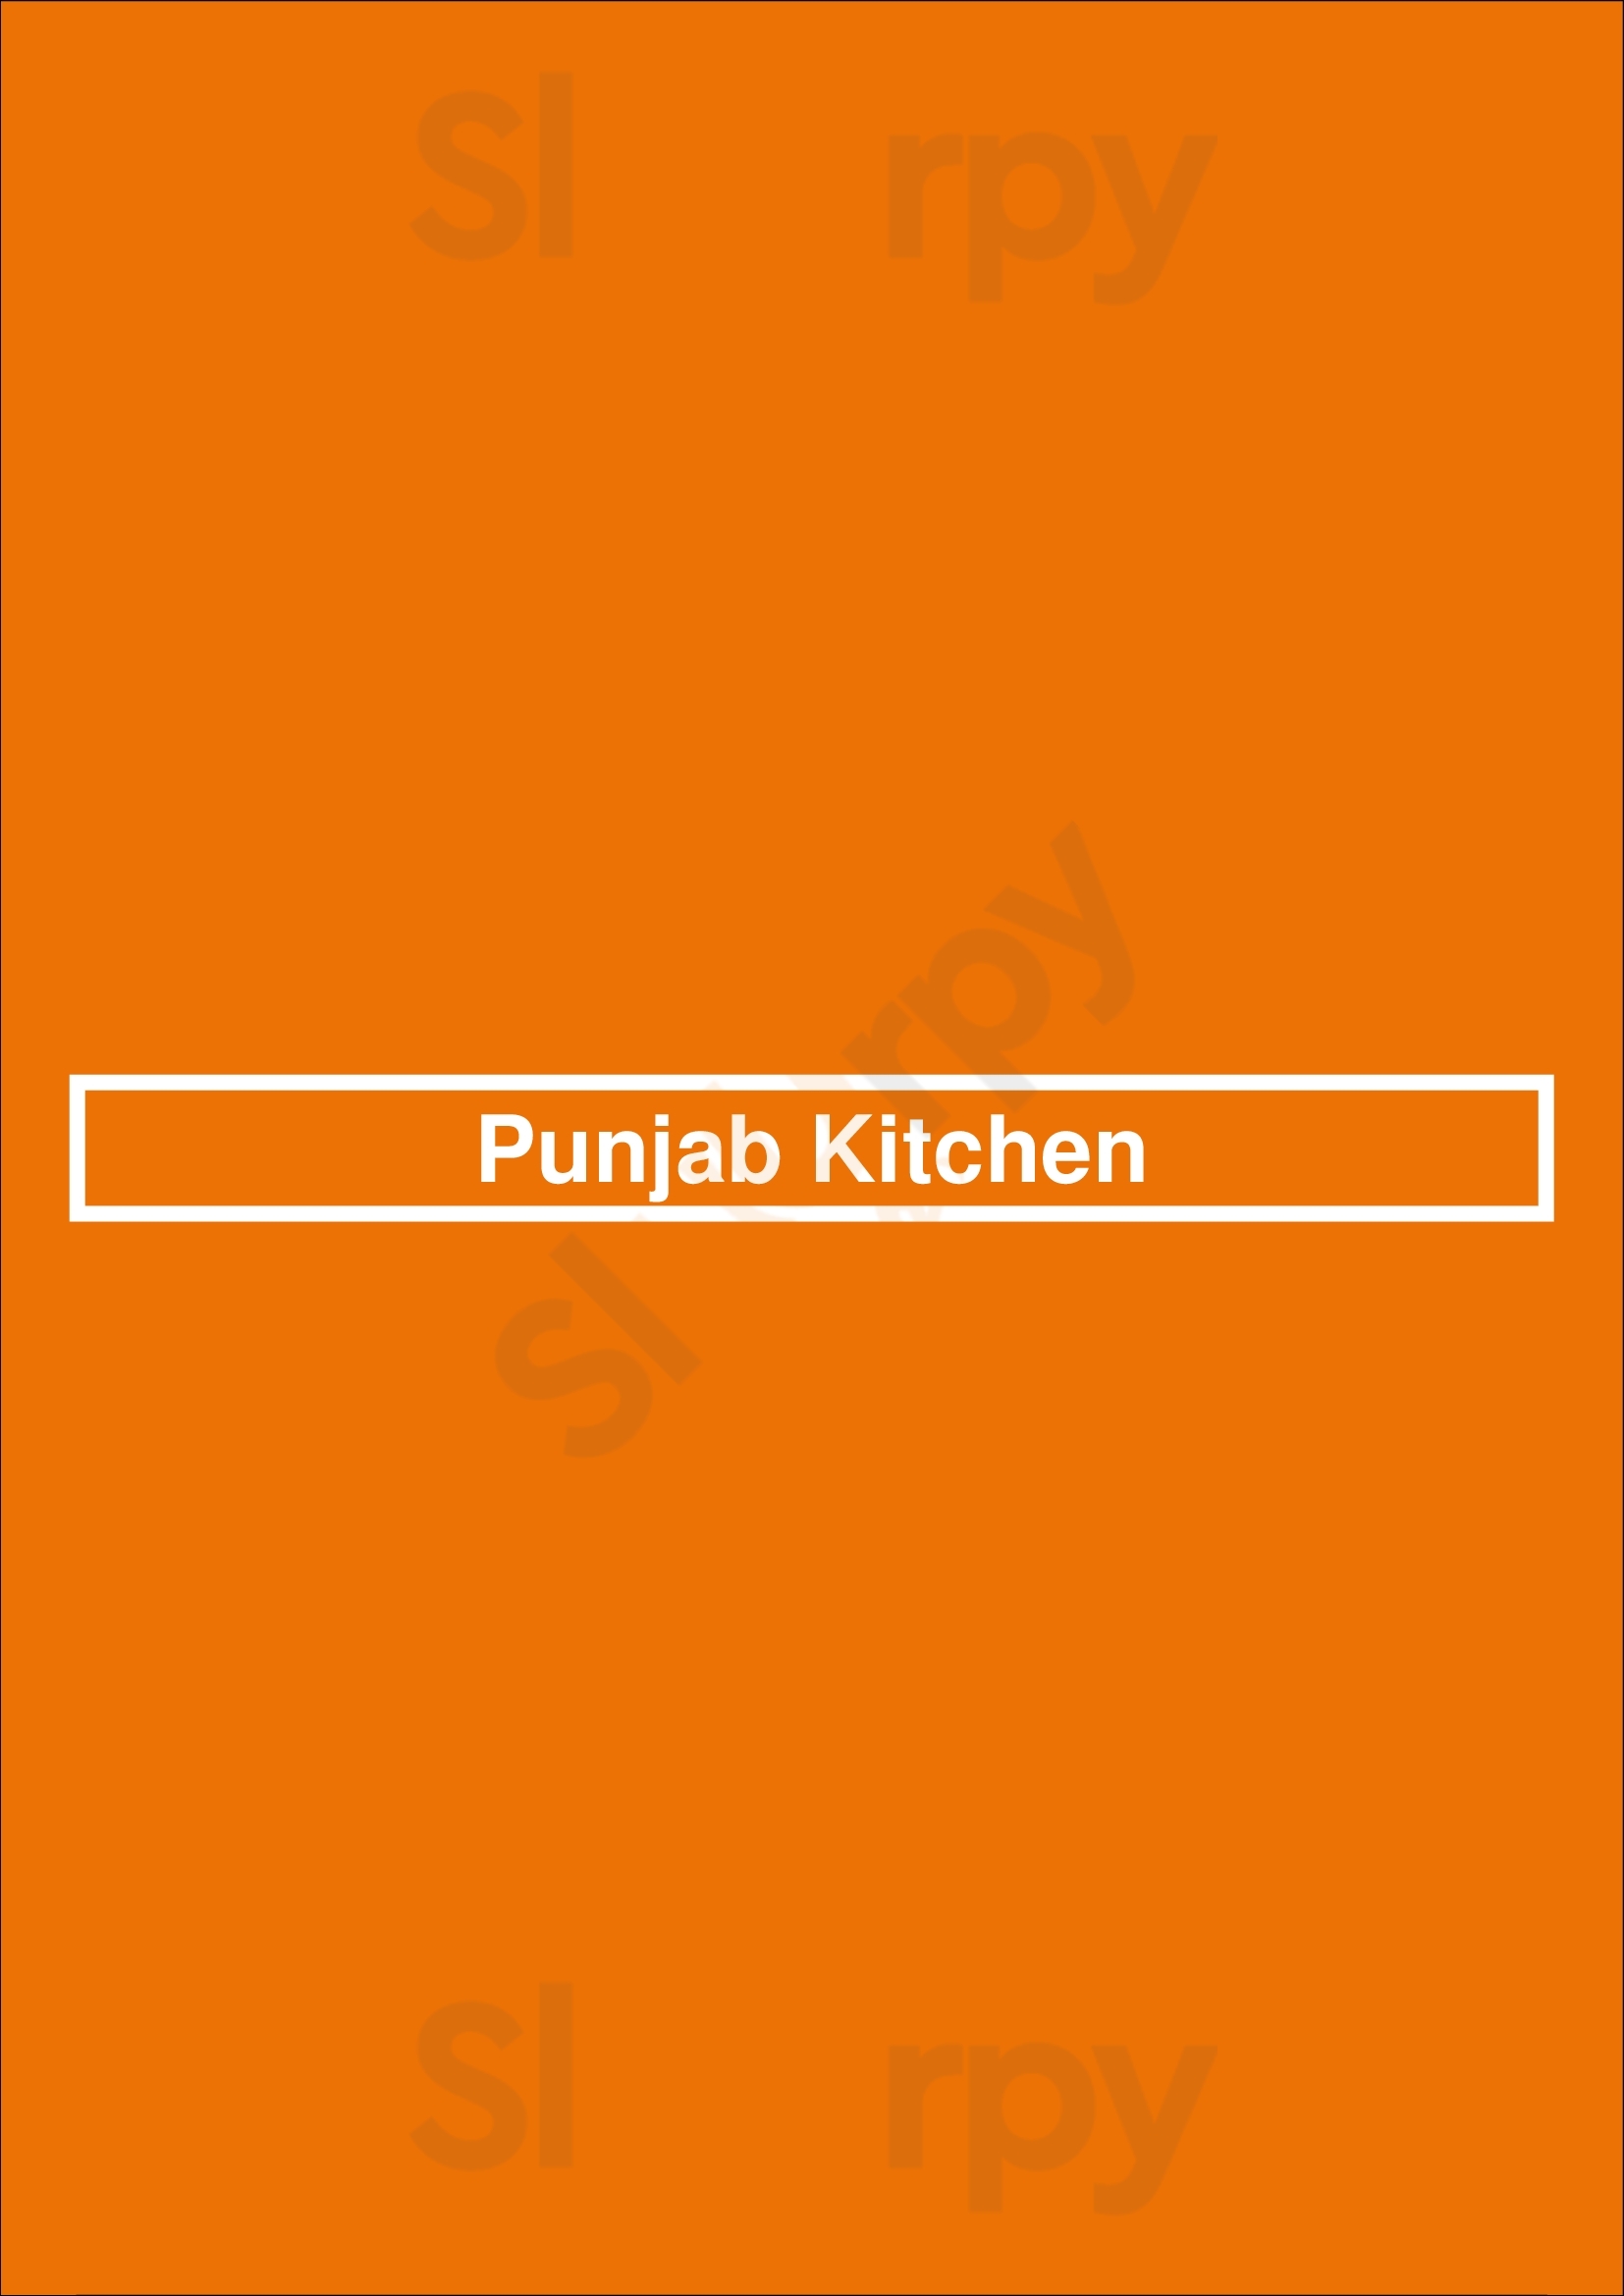 Punjab Kitchen Continental Takeaway Kingston-upon-Hull Menu - 1